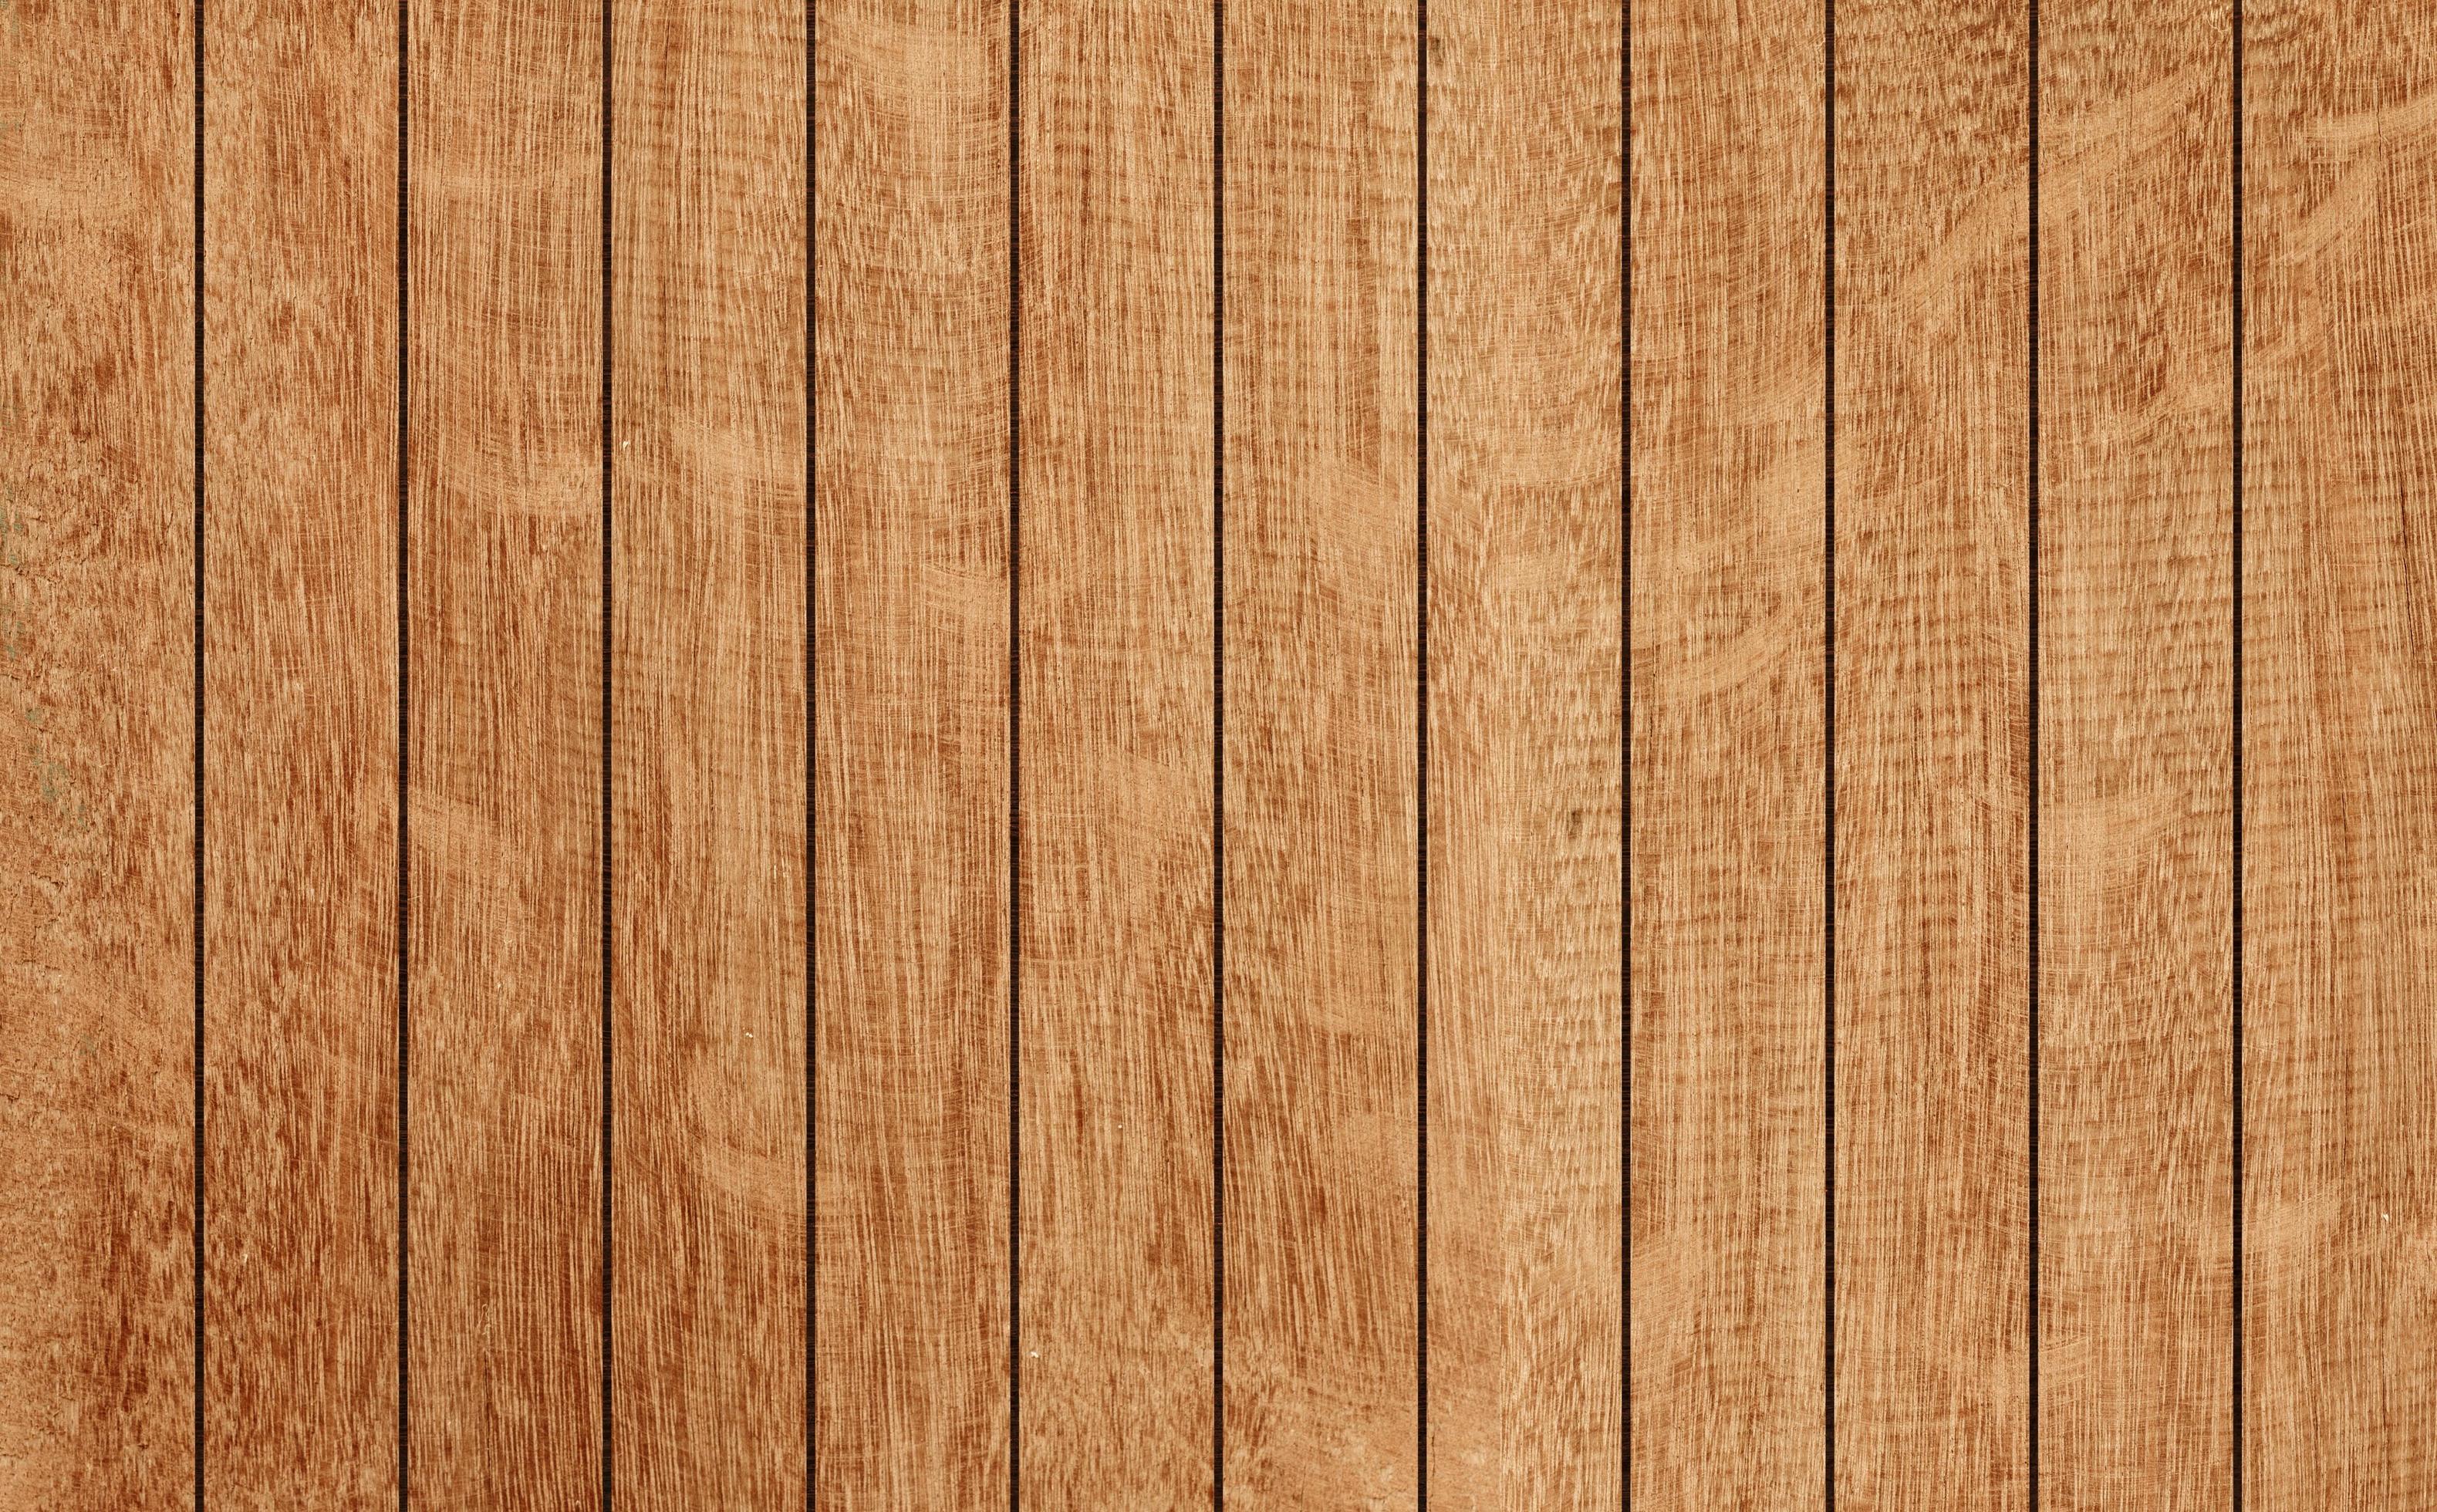 Nền gỗ hoặc tường gỗ như là sự lựa chọn hàng đầu của những người yêu thiết kế nội thất. Với màu trẻ trung và độc đáo, đó là lựa chọn tốt nhất để tạo nên vẻ đẹp cho bất kỳ không gian sống nào. Hãy tìm hiểu để chọn cho mình một mẫu tường gỗ hoàn hảo nhất.